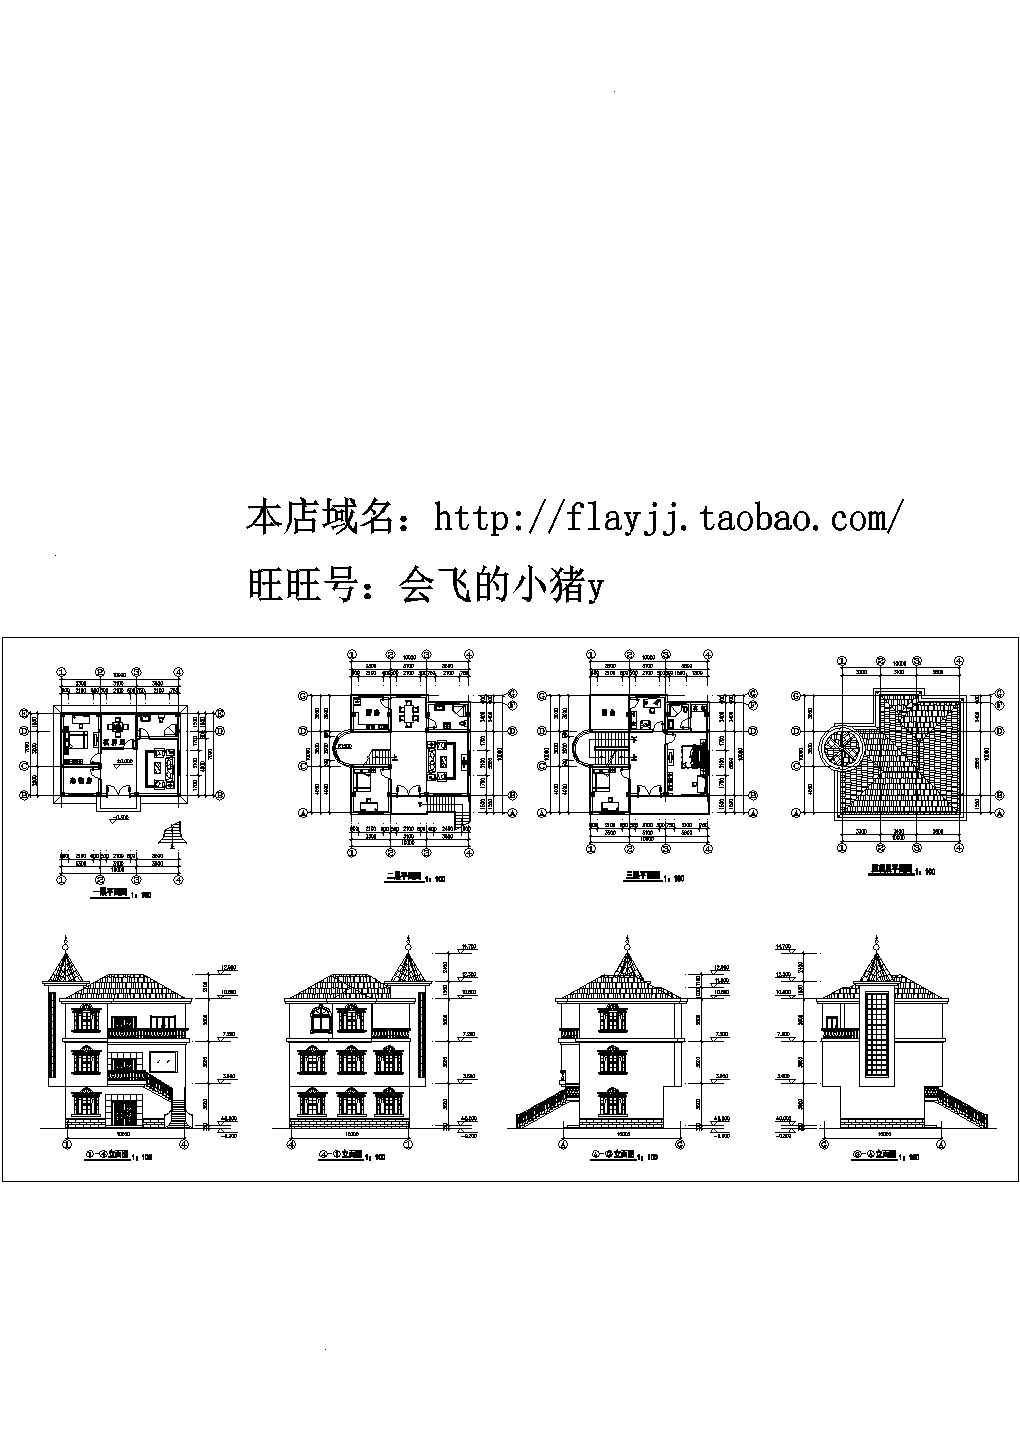 长10米 宽7米 3层简单小别墅建筑设计图